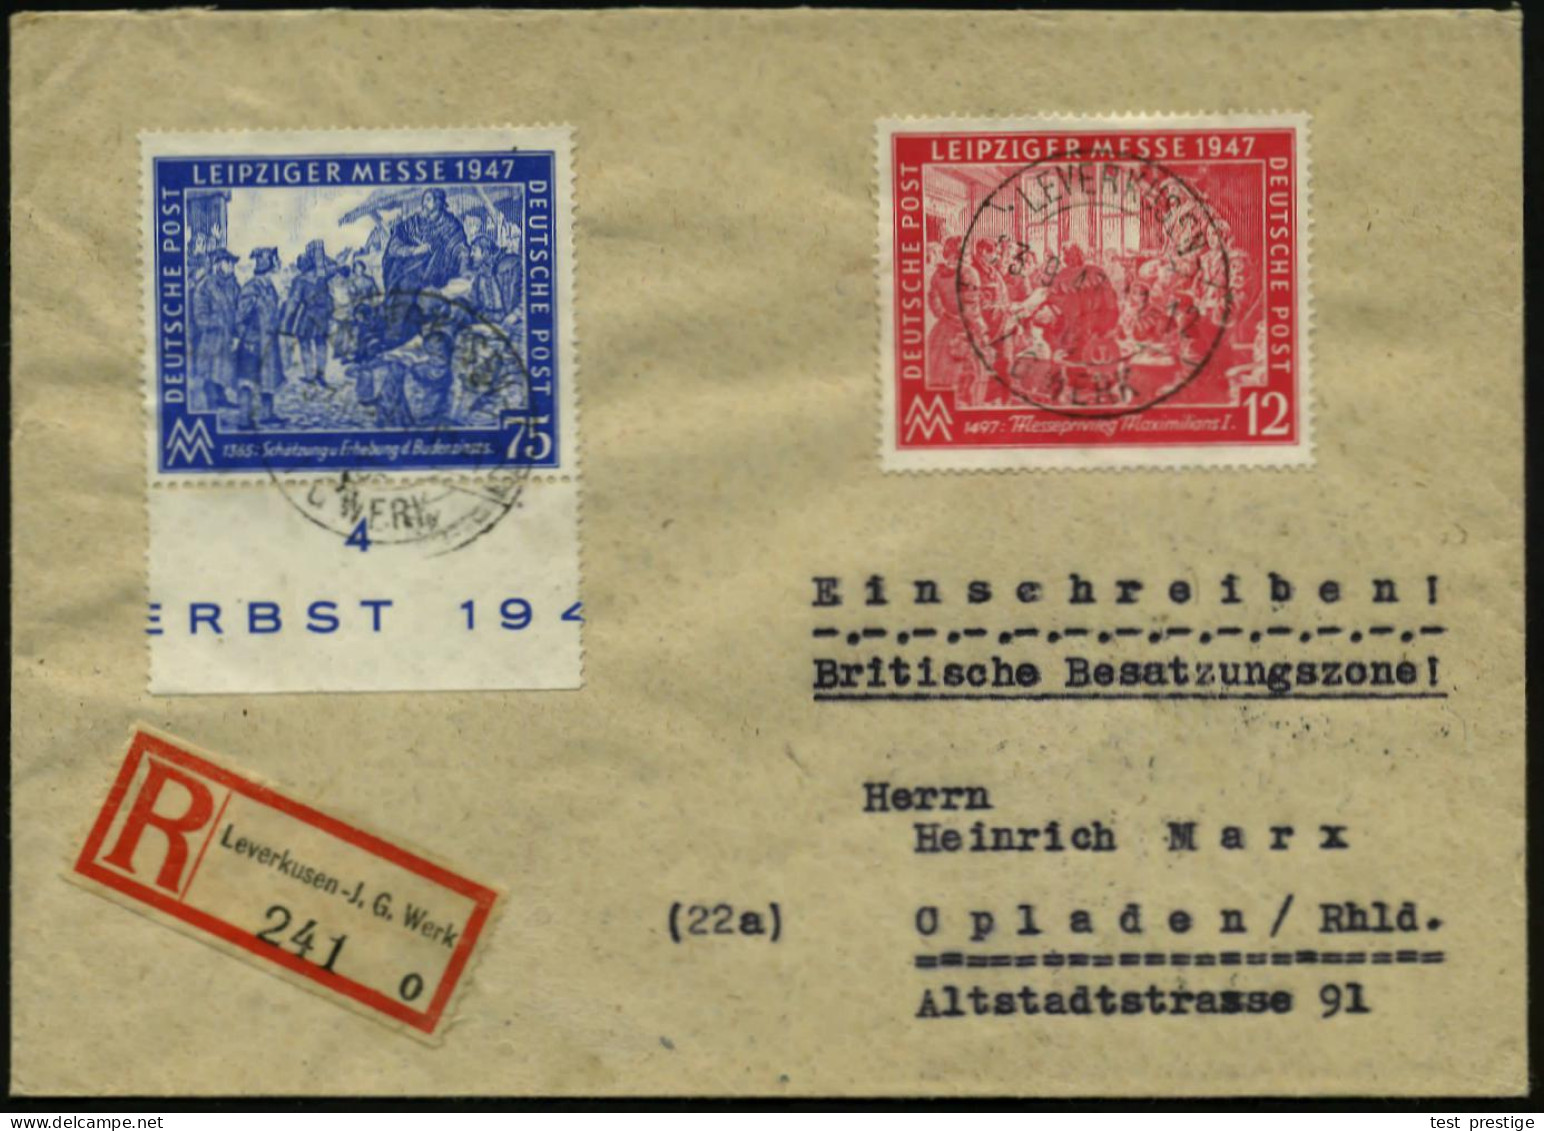 LEVERKUSEN-/ C/ I.G. WERK 1947 (23.9.) 1K-Brücke Mit UB "c", = Hauspostamt Bayer-Werk Unverändert 2x Auf Leipz. Messe-Sa - Química